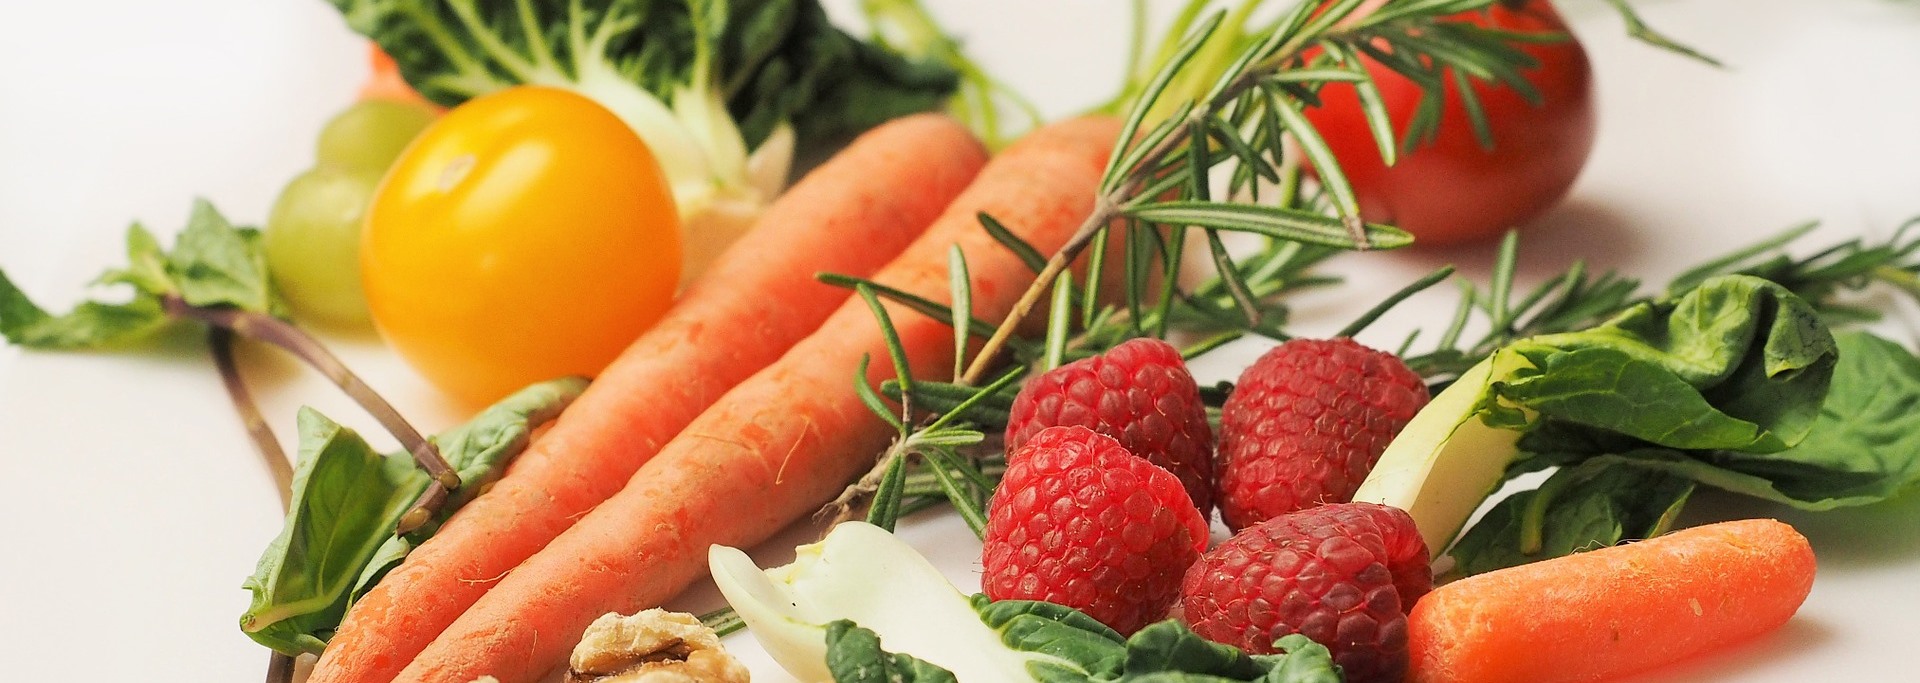 dieta warzywa i owoce